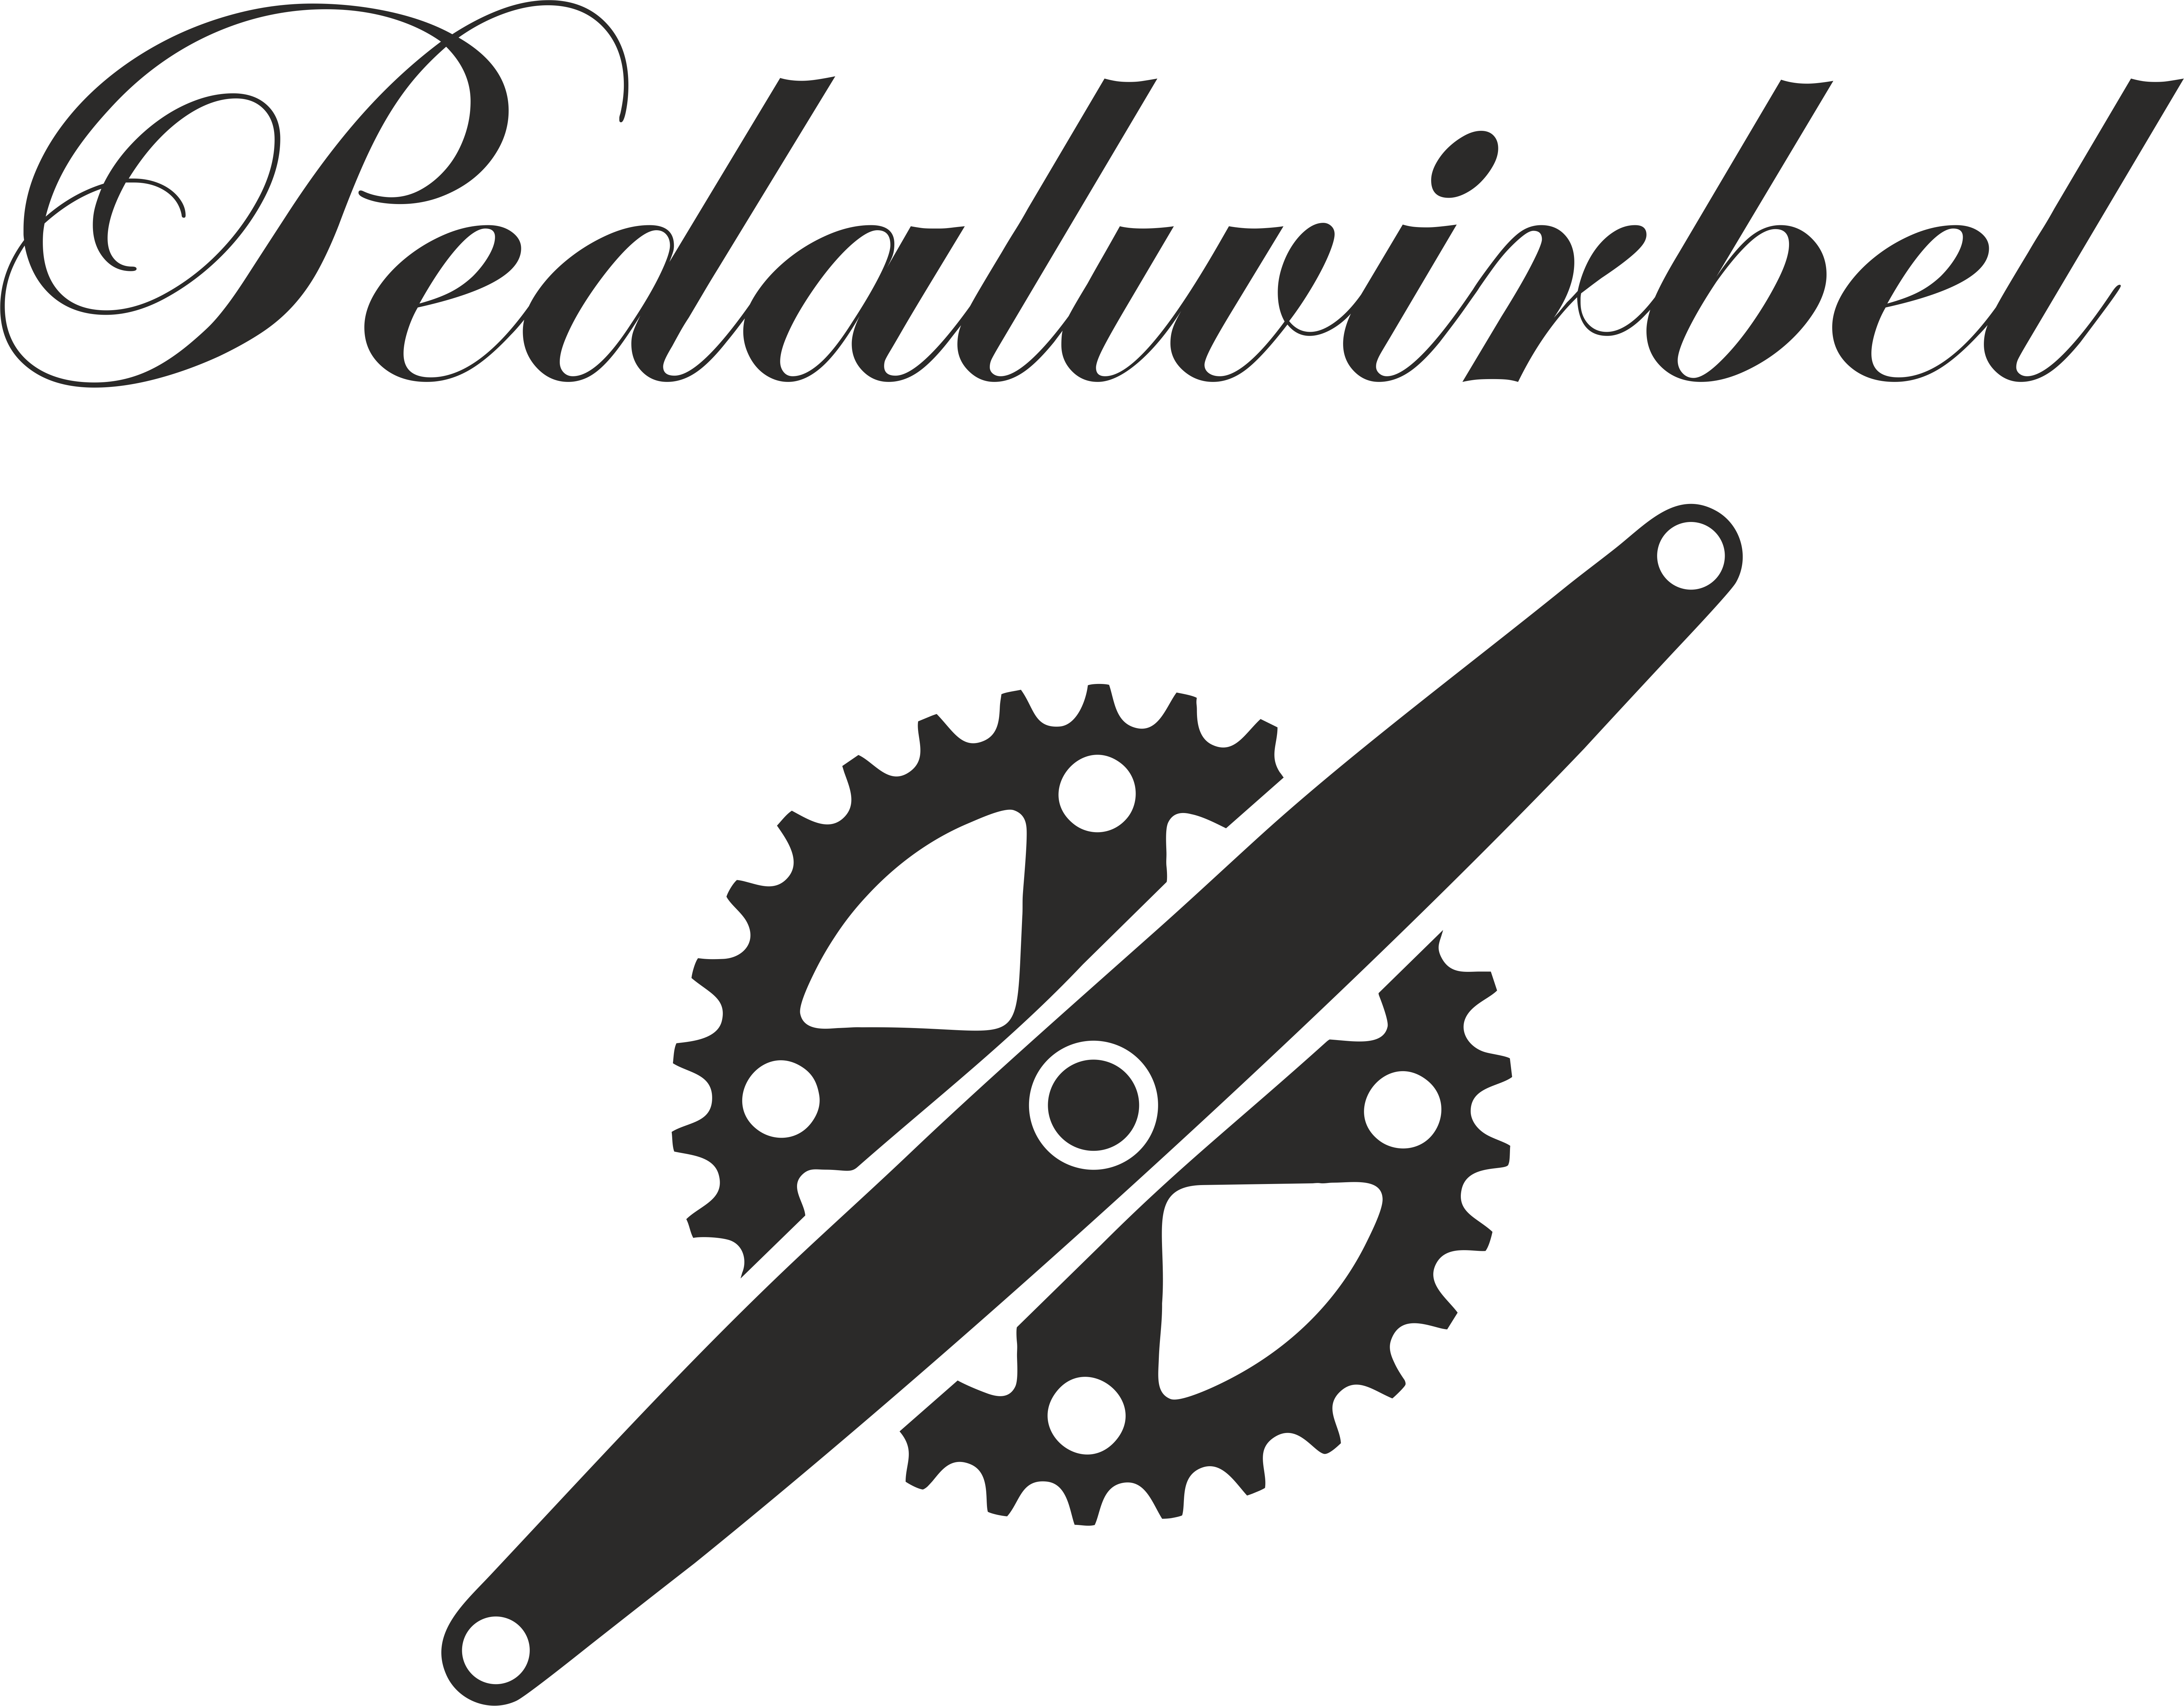 www.pedalwirbel.de